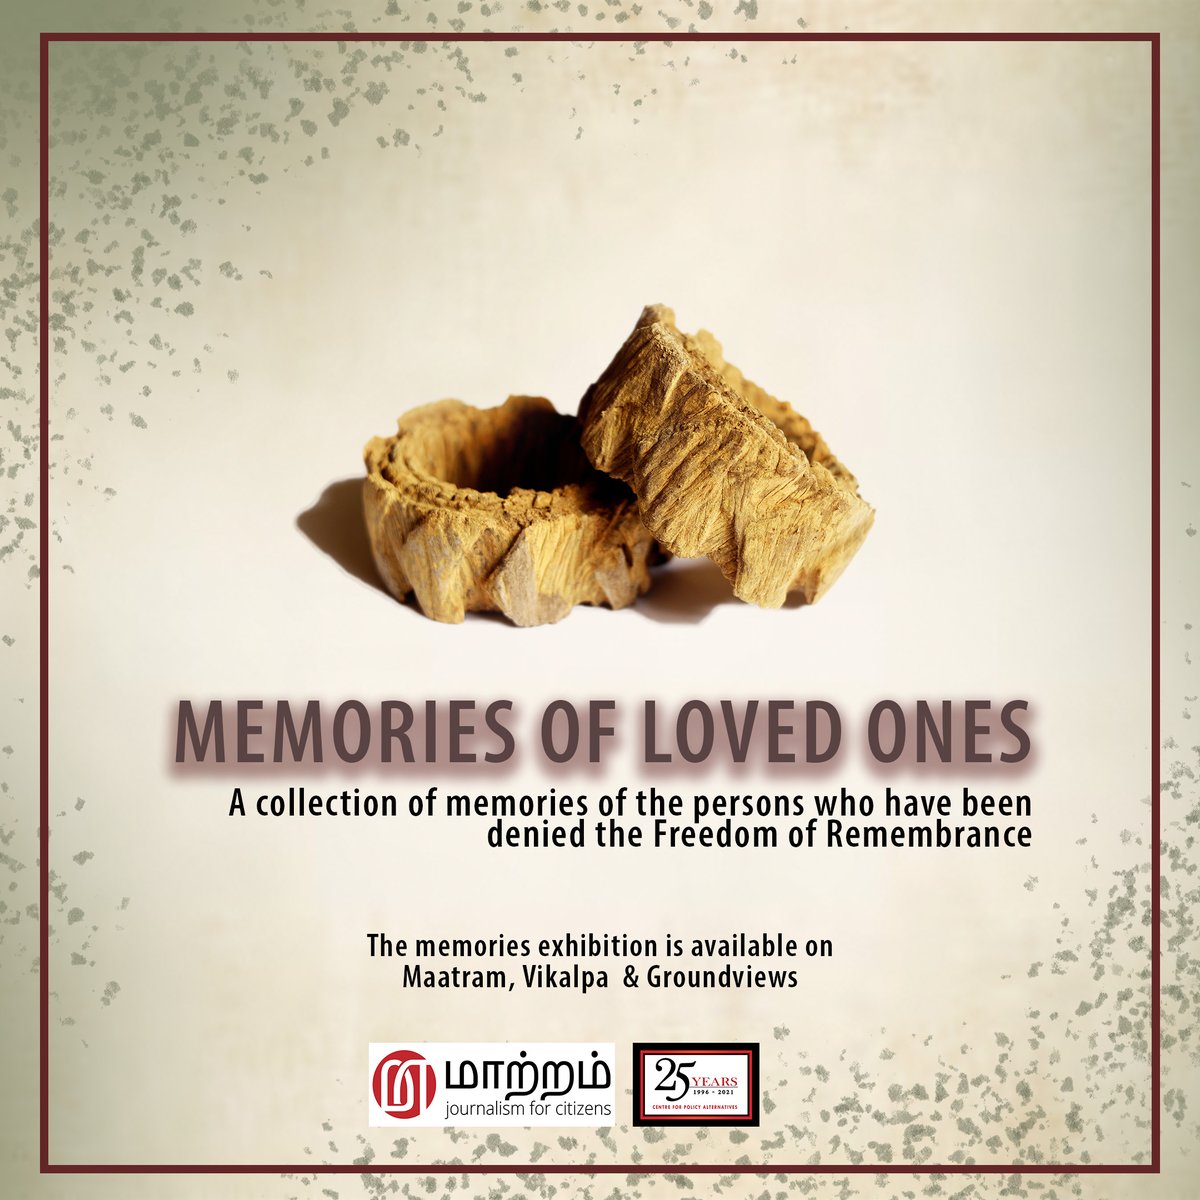 'Memories of Loved Ones' a virtual memorial by @SRajasegar & @MaatramSL . View the virtual memorial from the following links: maatram.org/memories groundviews.org/memories vikalpa.org/memories